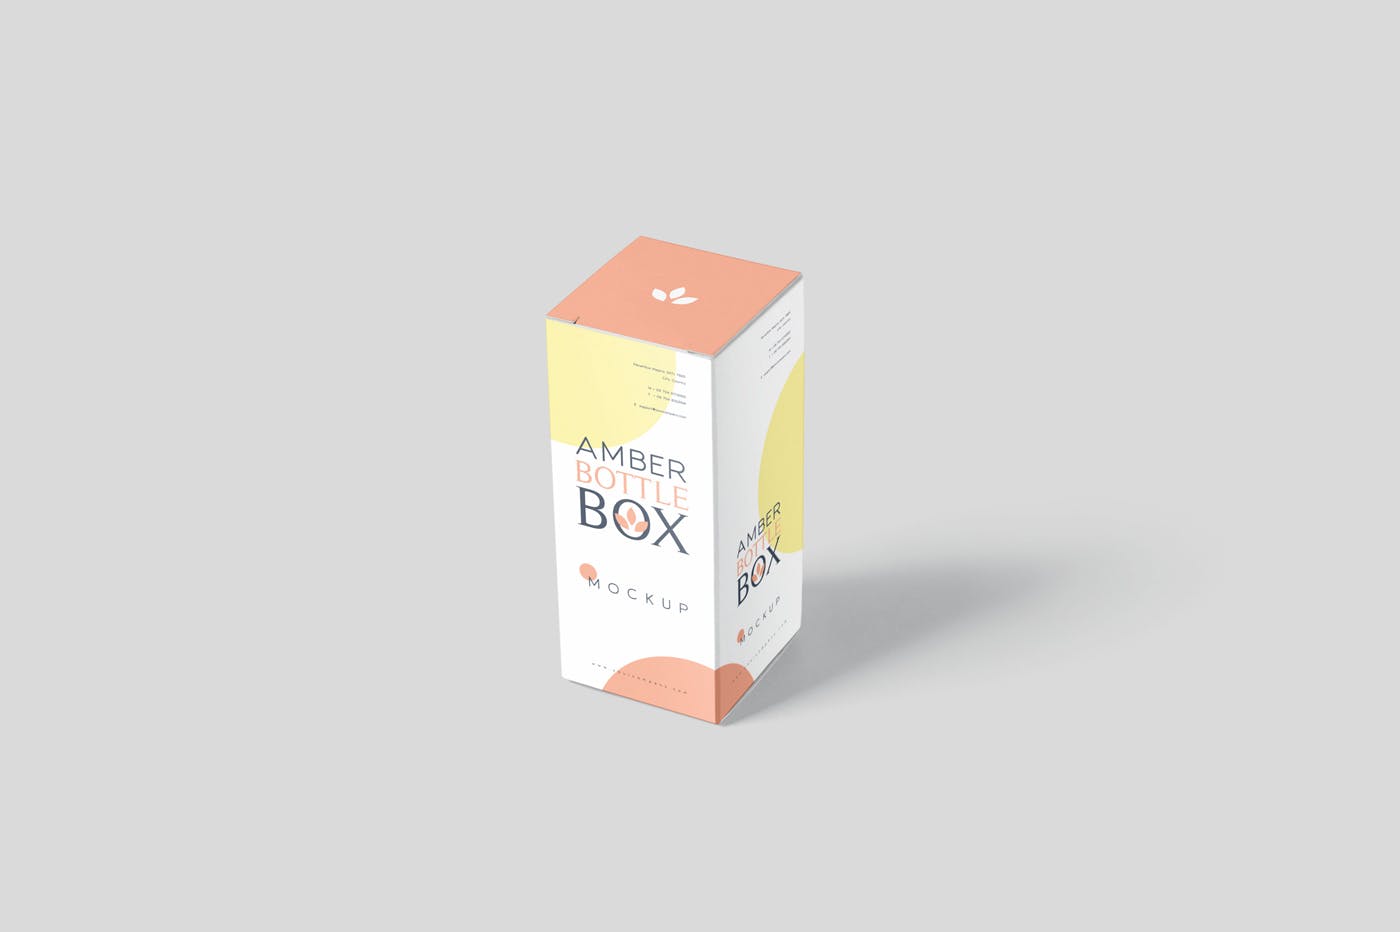 药物瓶&包装纸盒设计图第一素材精选模板 Amber Bottle Box Mockup Set插图(2)